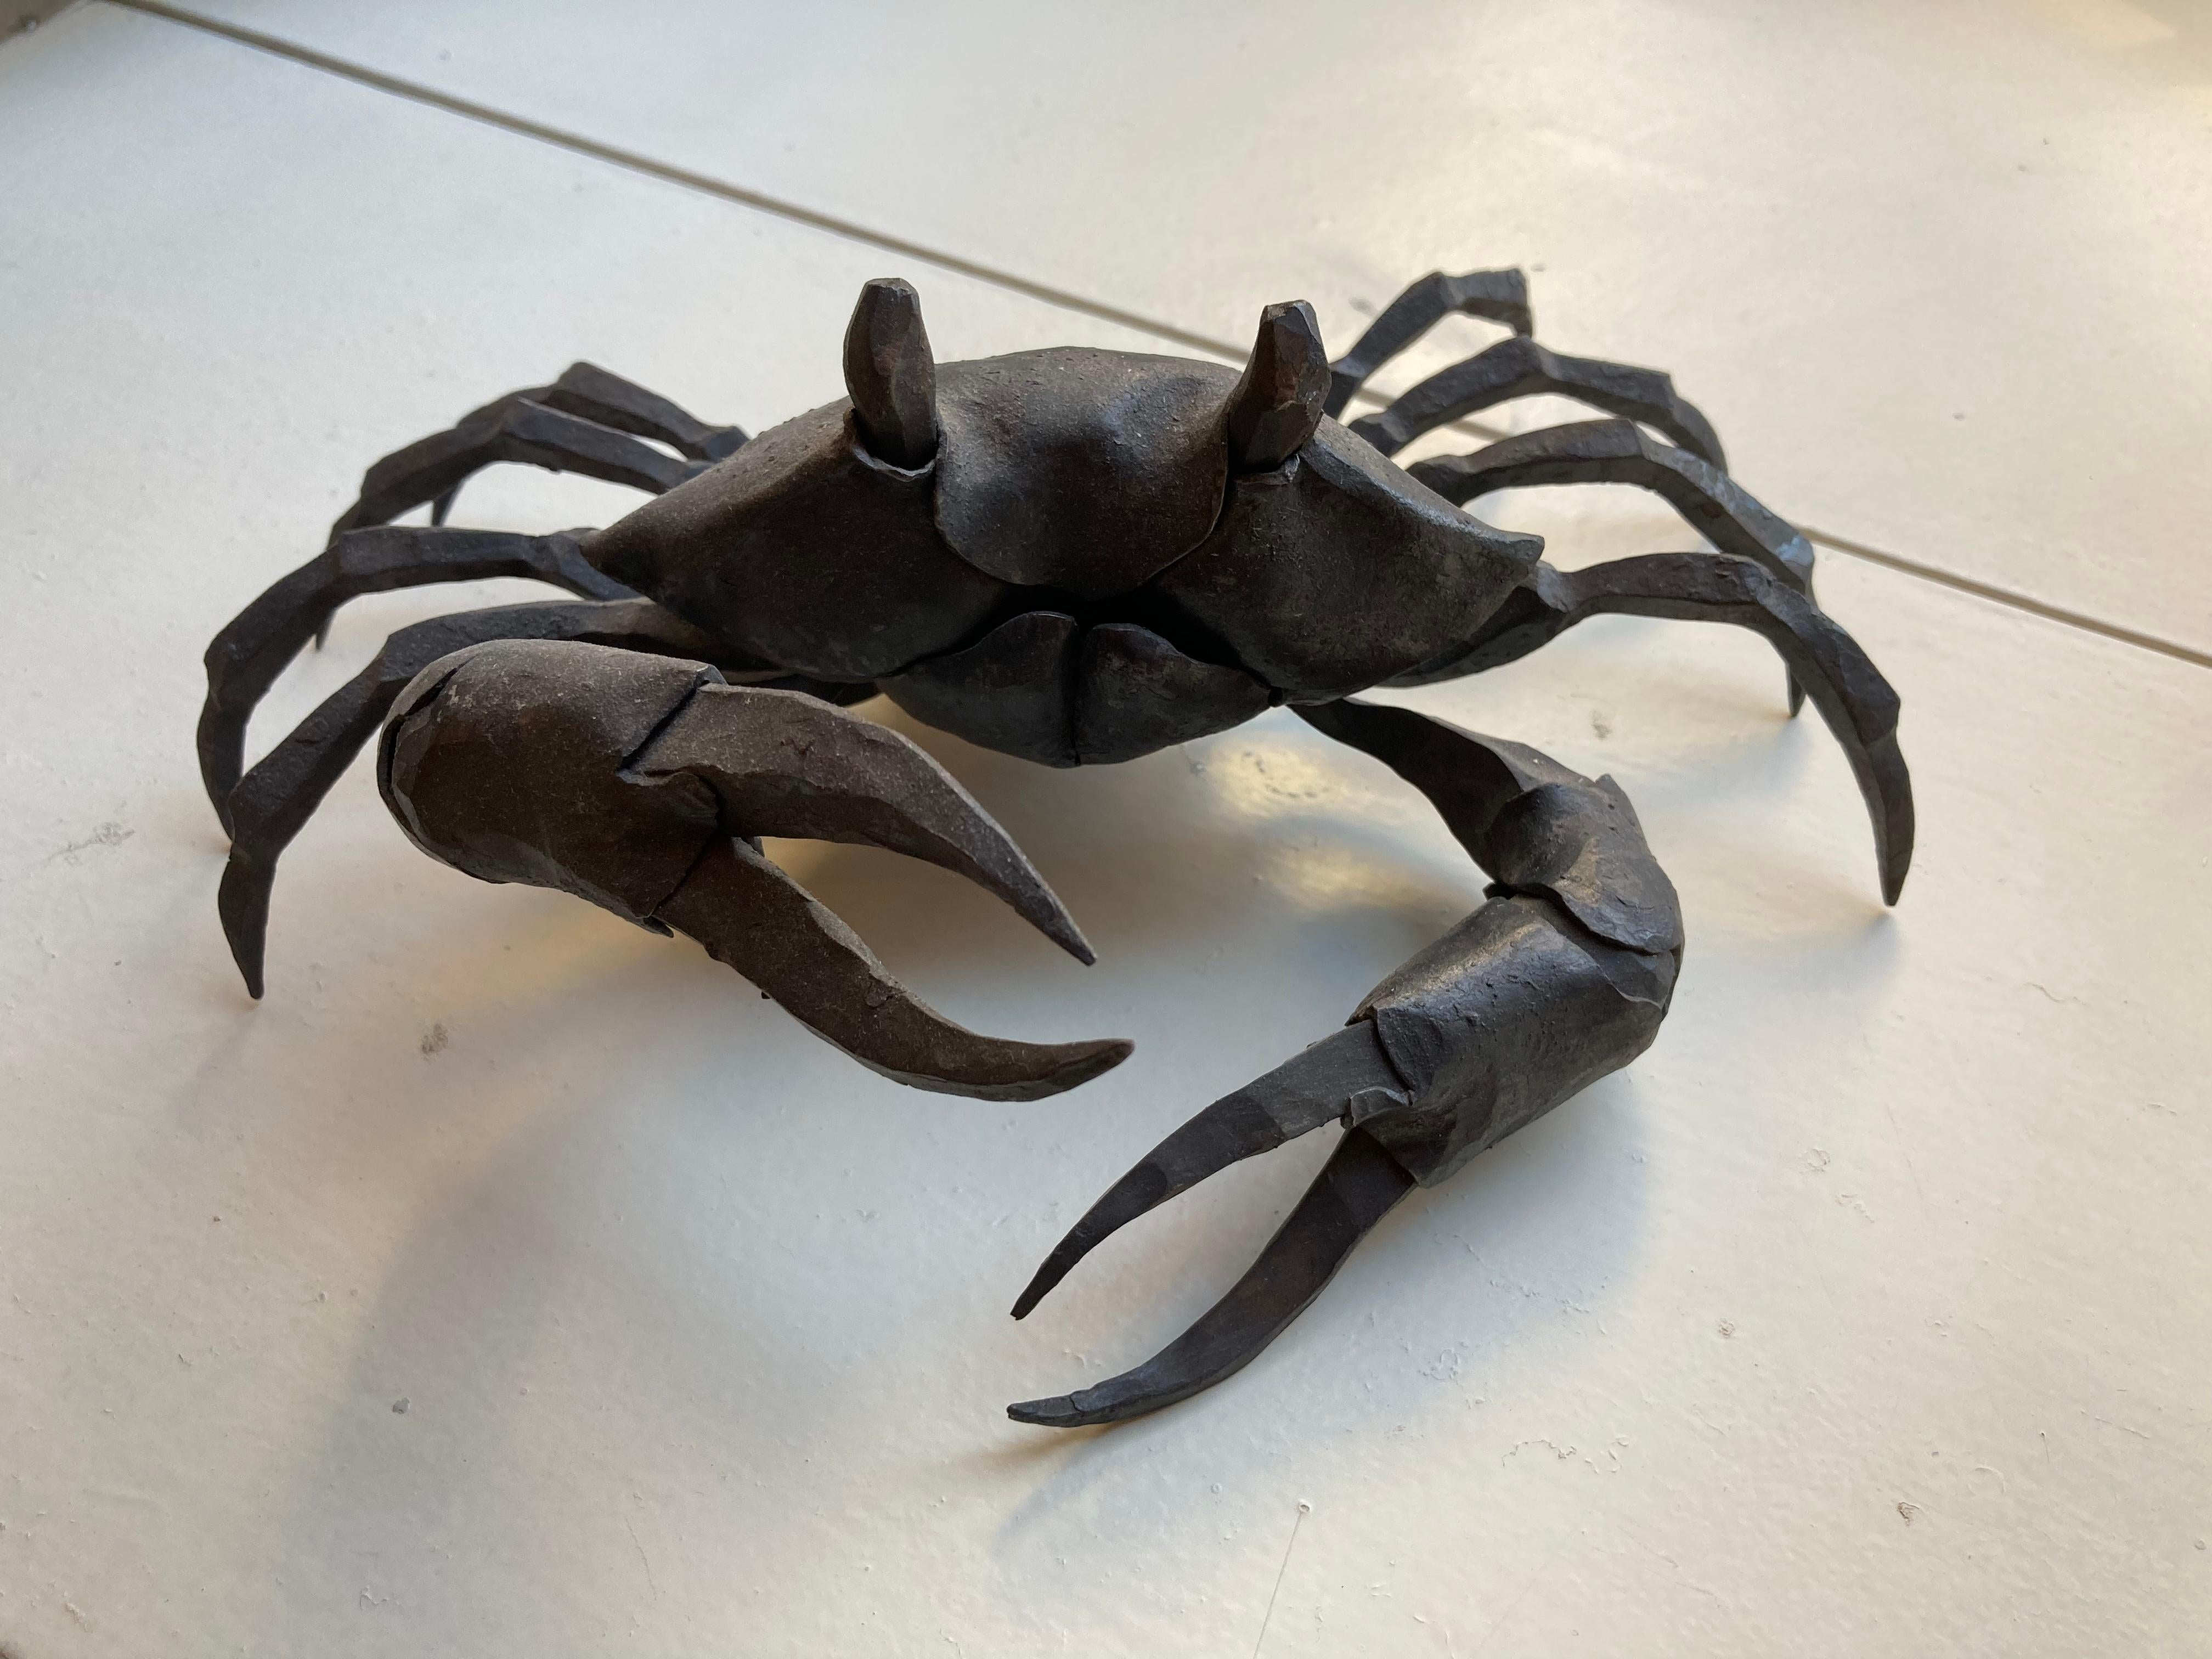 La marche des crabes, série de sculptures en fer forgé d'un forgeron italien - Réalisme Sculpture par Ivan Zanoni